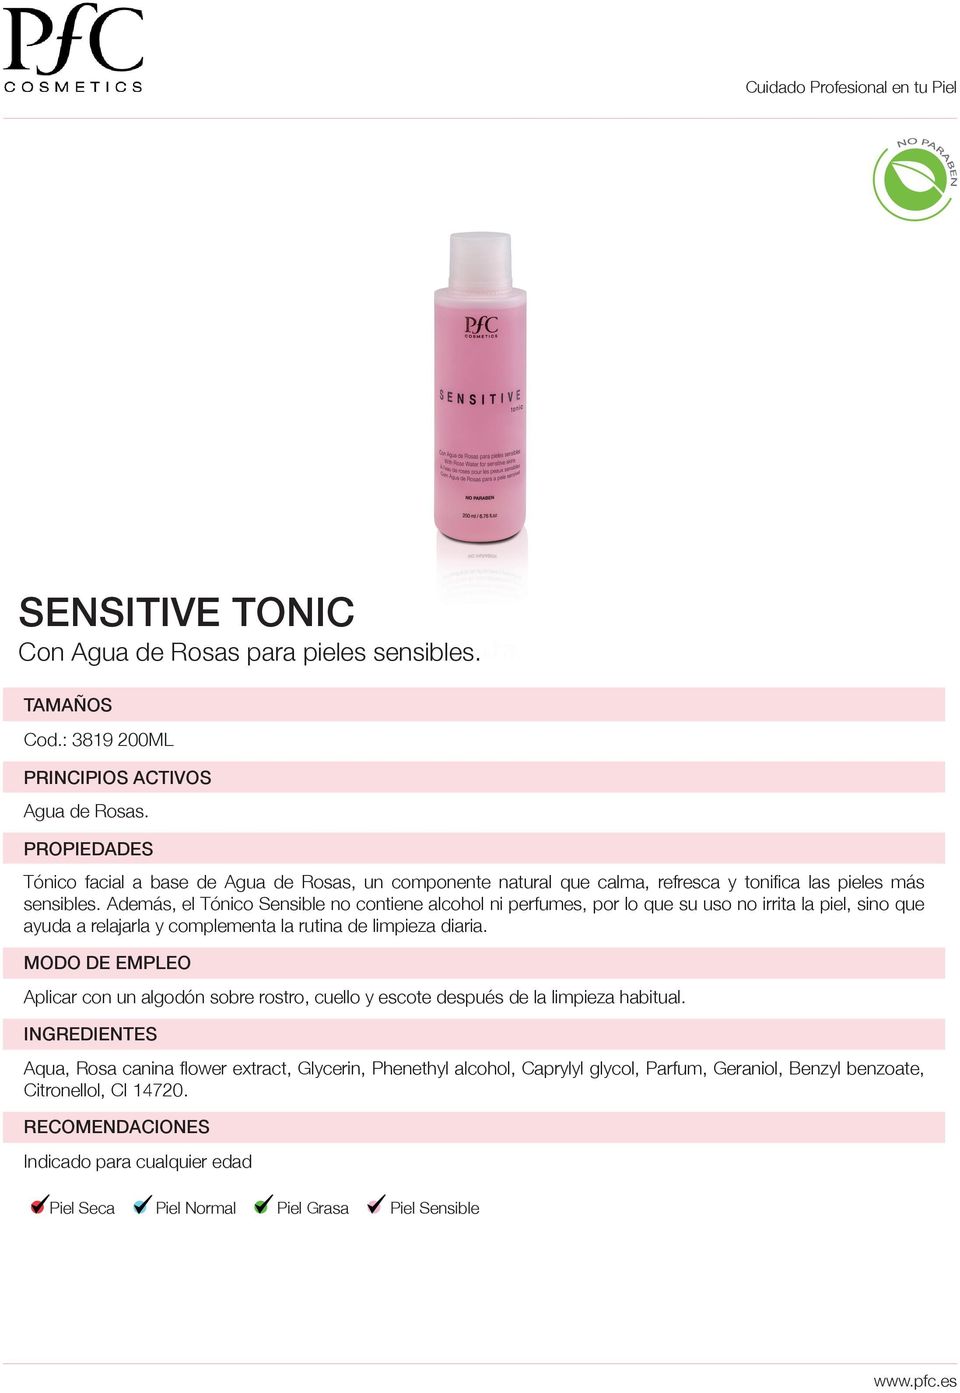 Además, el Tónico Sensible no contiene alcohol ni perfumes, por lo que su uso no irrita la piel, sino que ayuda a relajarla y complementa la rutina